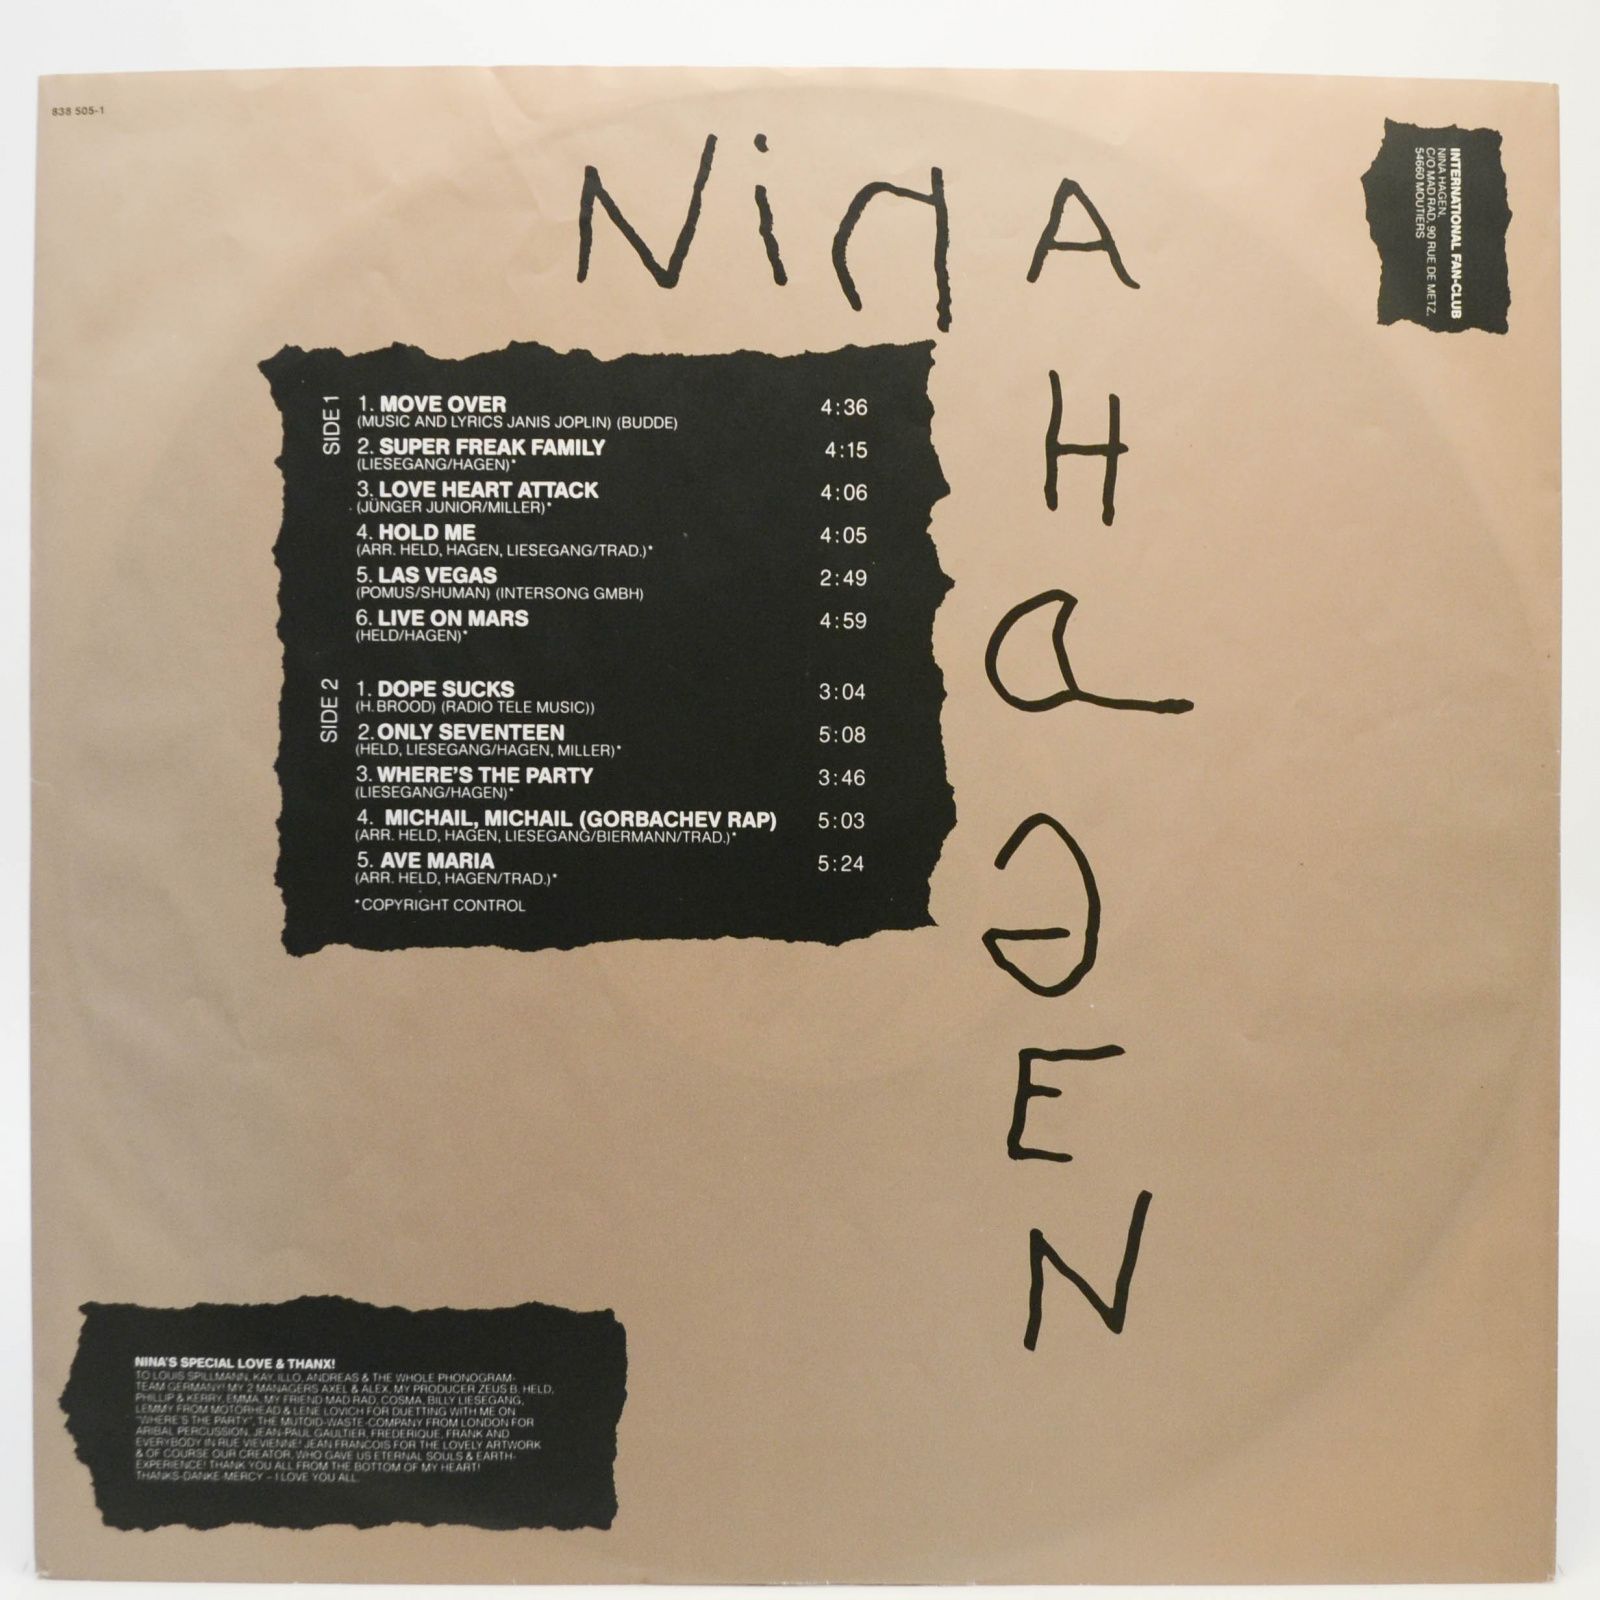 Nina Hagen — Nina Hagen, 1989